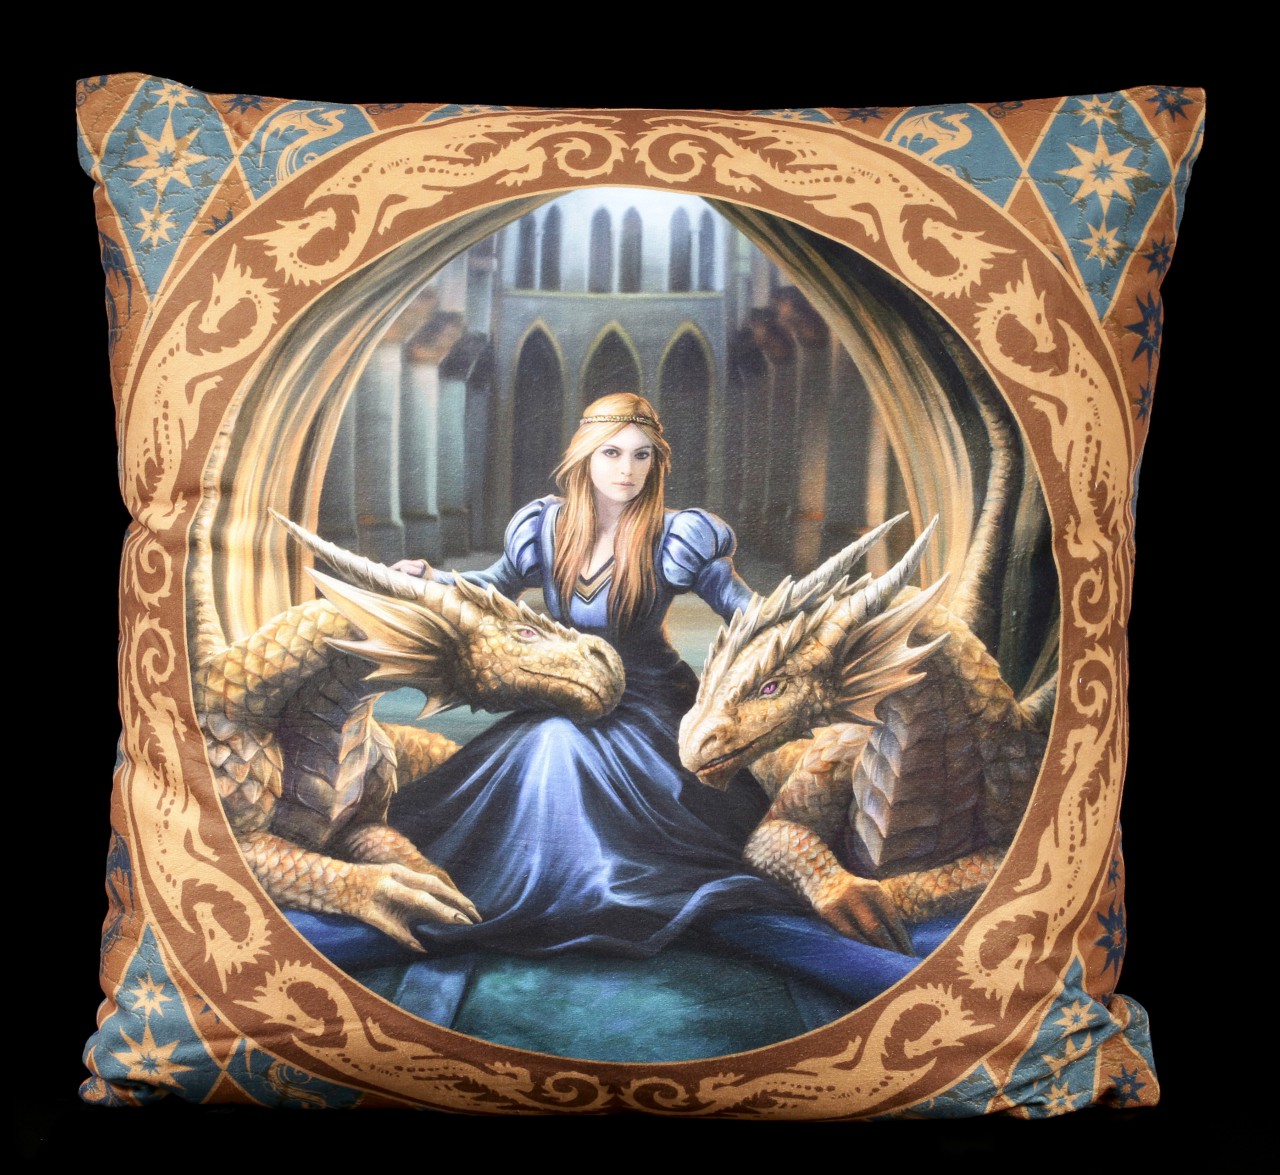 Cushion with Dragons - Fierce Loyalty